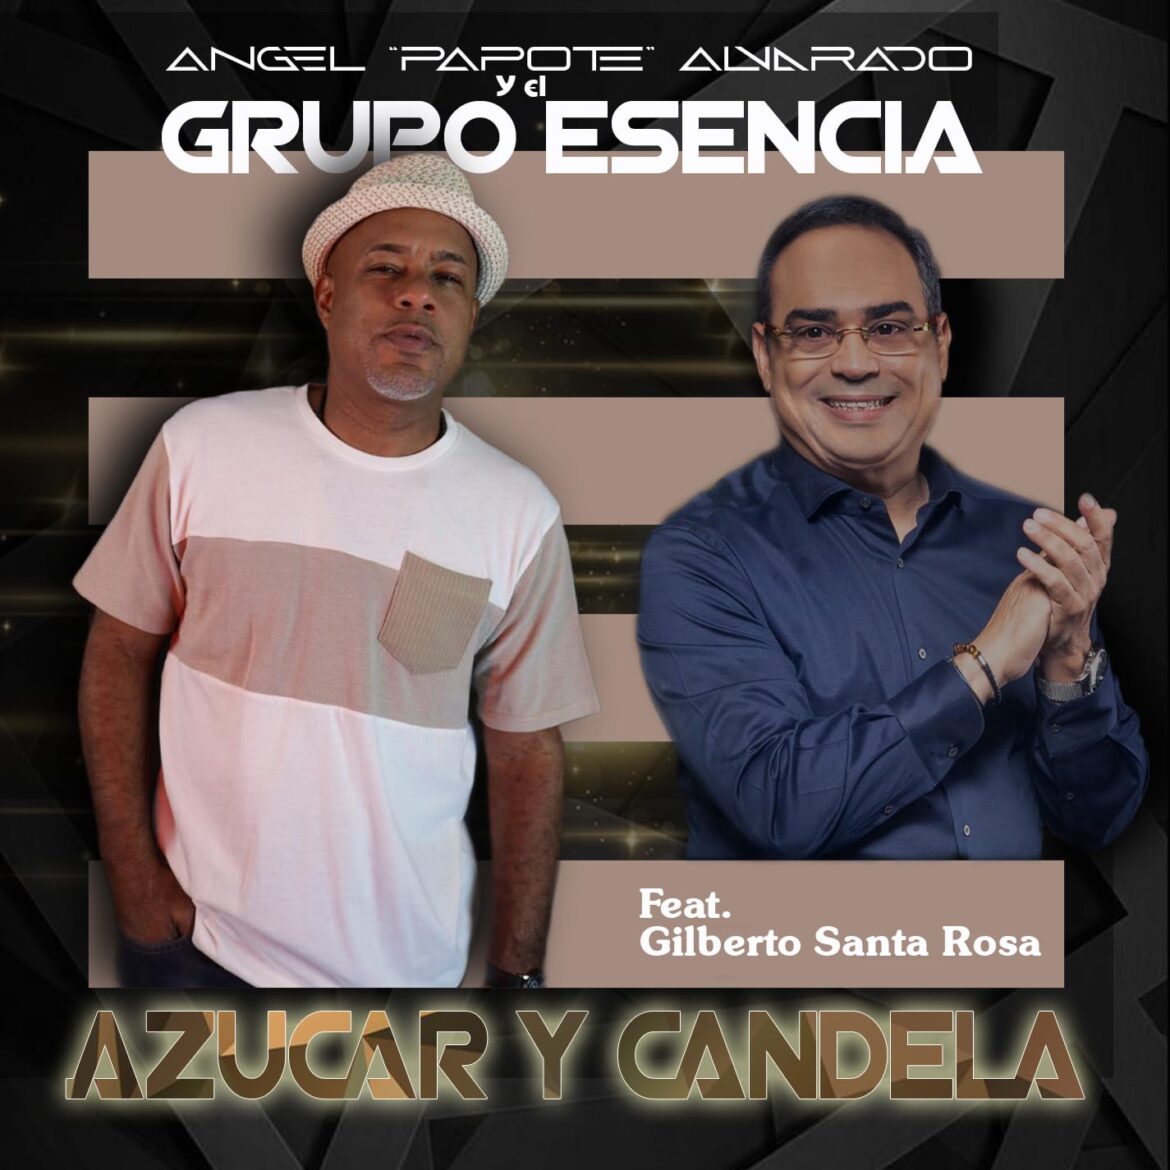 Ángel “Papote” Alvarado (Grupo Esencia) y Gilberto Santa Rosa graban juntos “Azúcar y Candela”